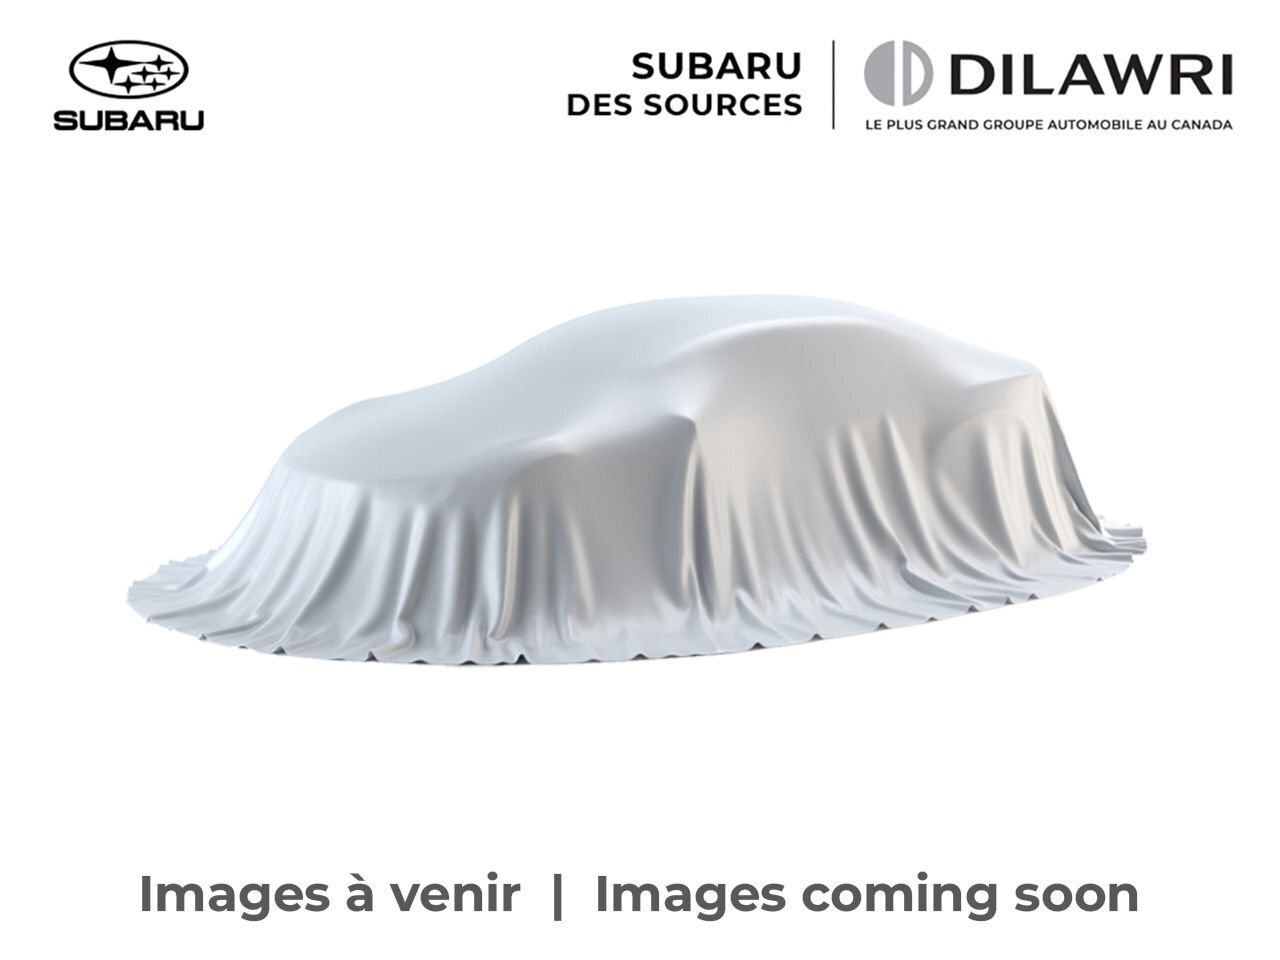 2022 Subaru Impreza Touring - Apple CarPlay/AndroidAuto,bluetooth, AWD